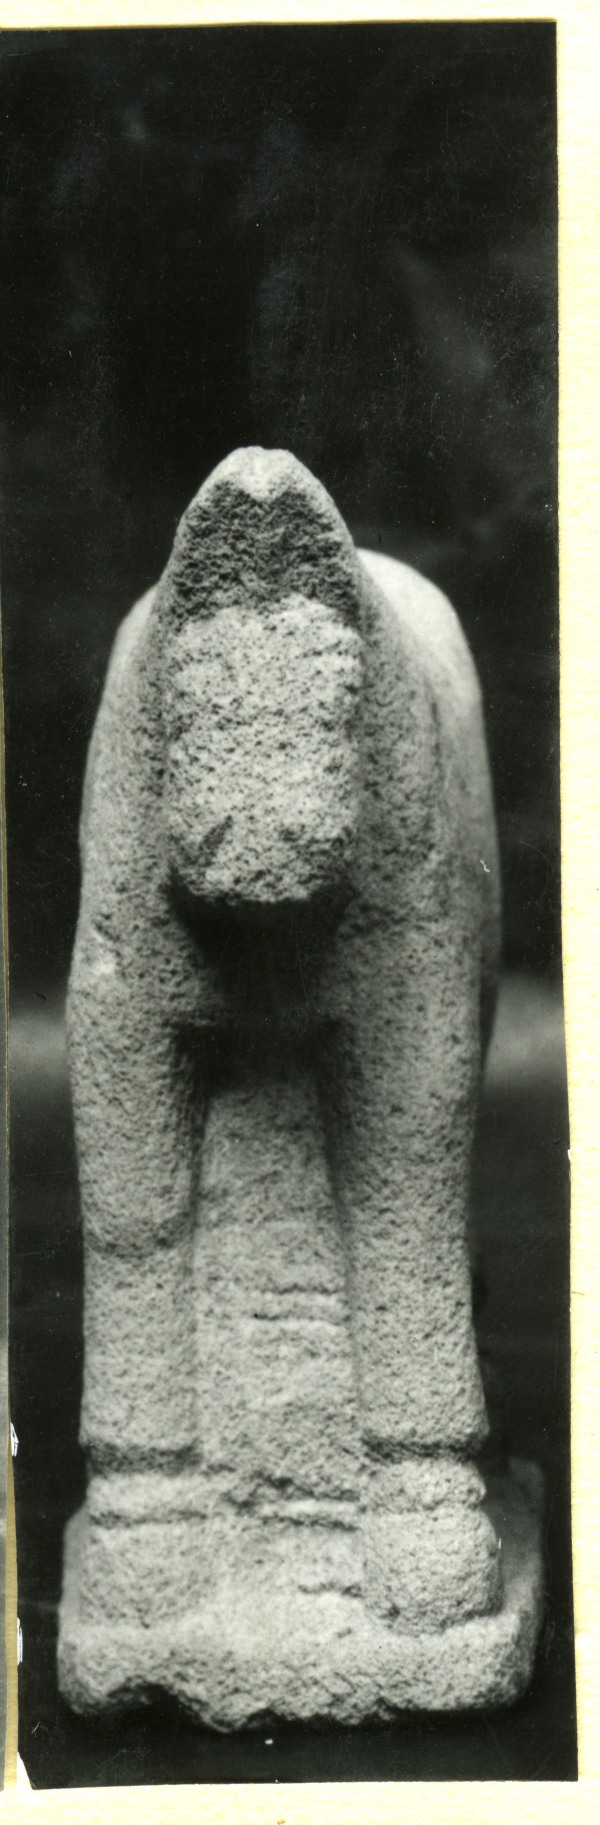 Vista frontal de escultura de un caballo sin atalajes en altorrelieve hallada en el Santuario de El Cigarralejo (exvoto nº 34).